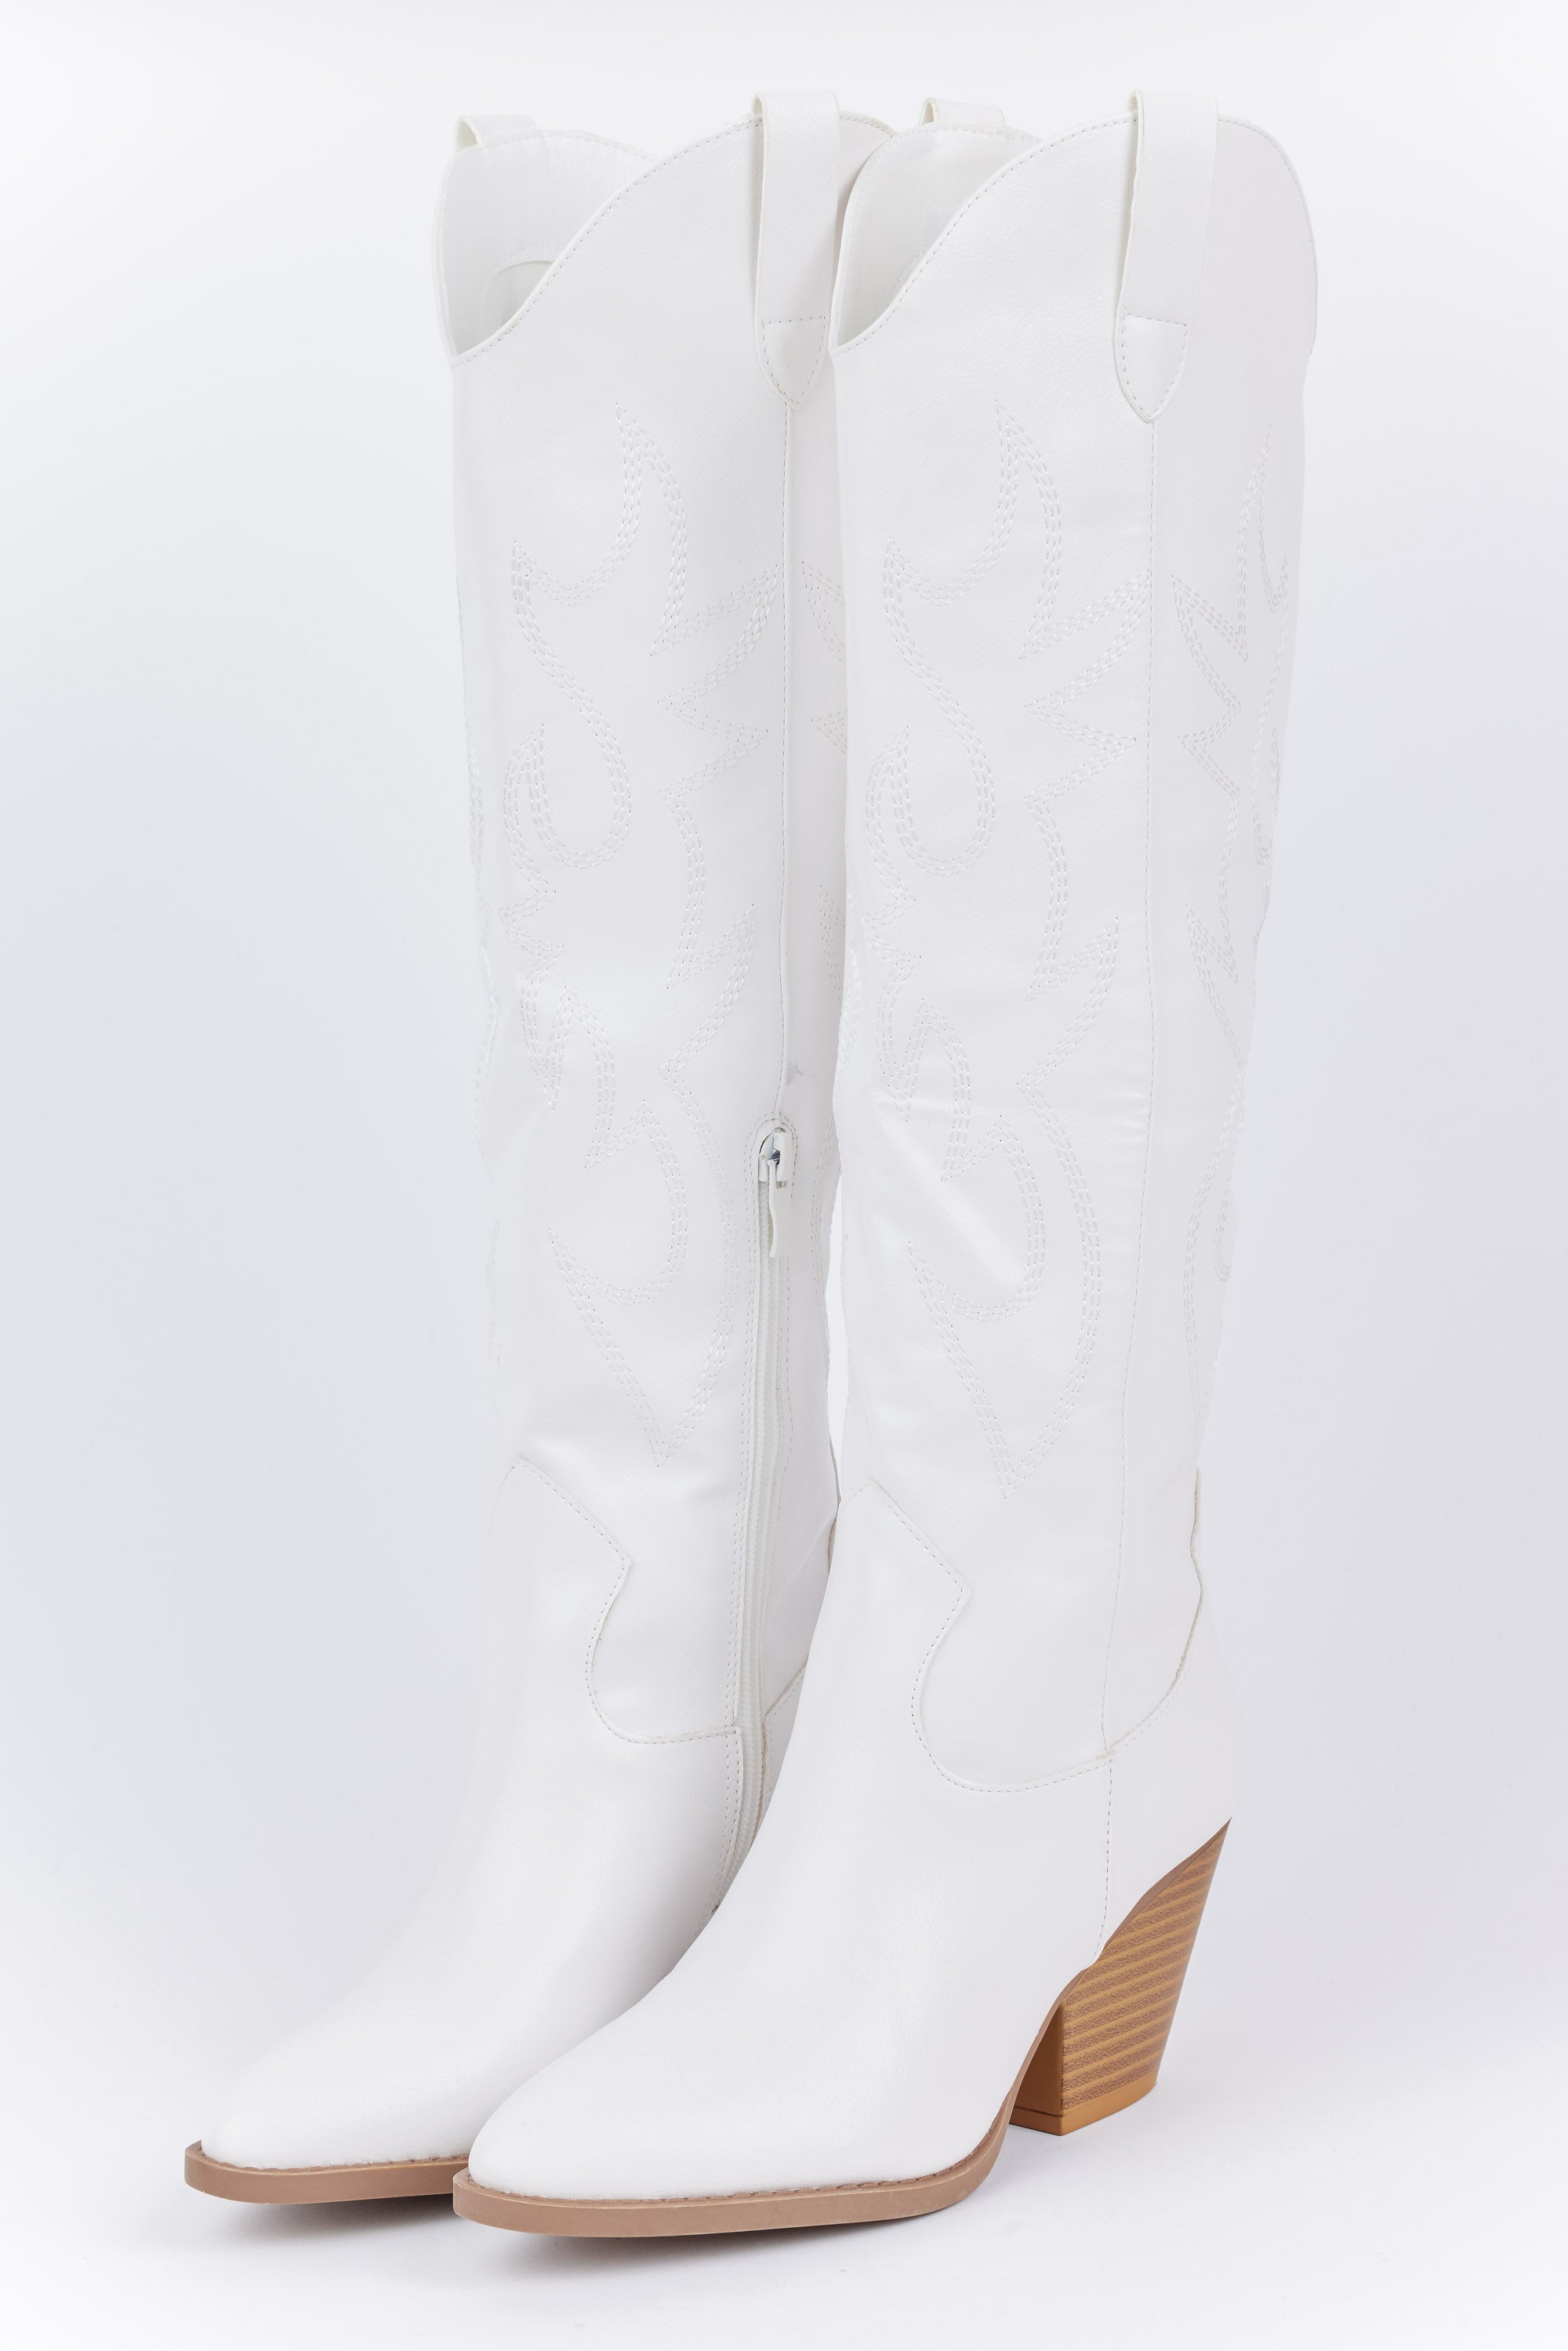 Savannah Boots - White